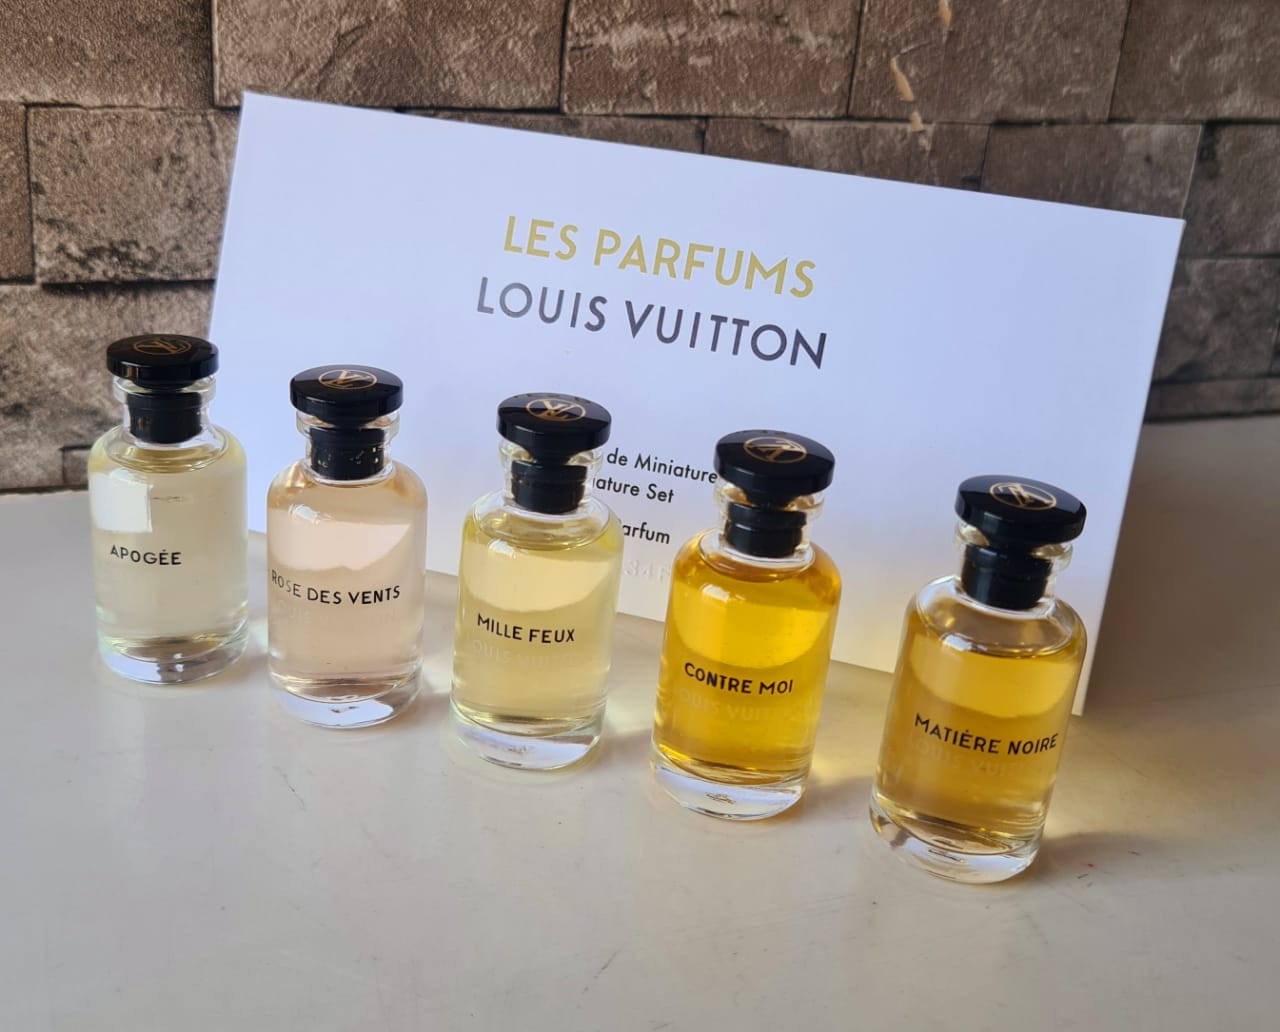 Lv perfume miniature gift set